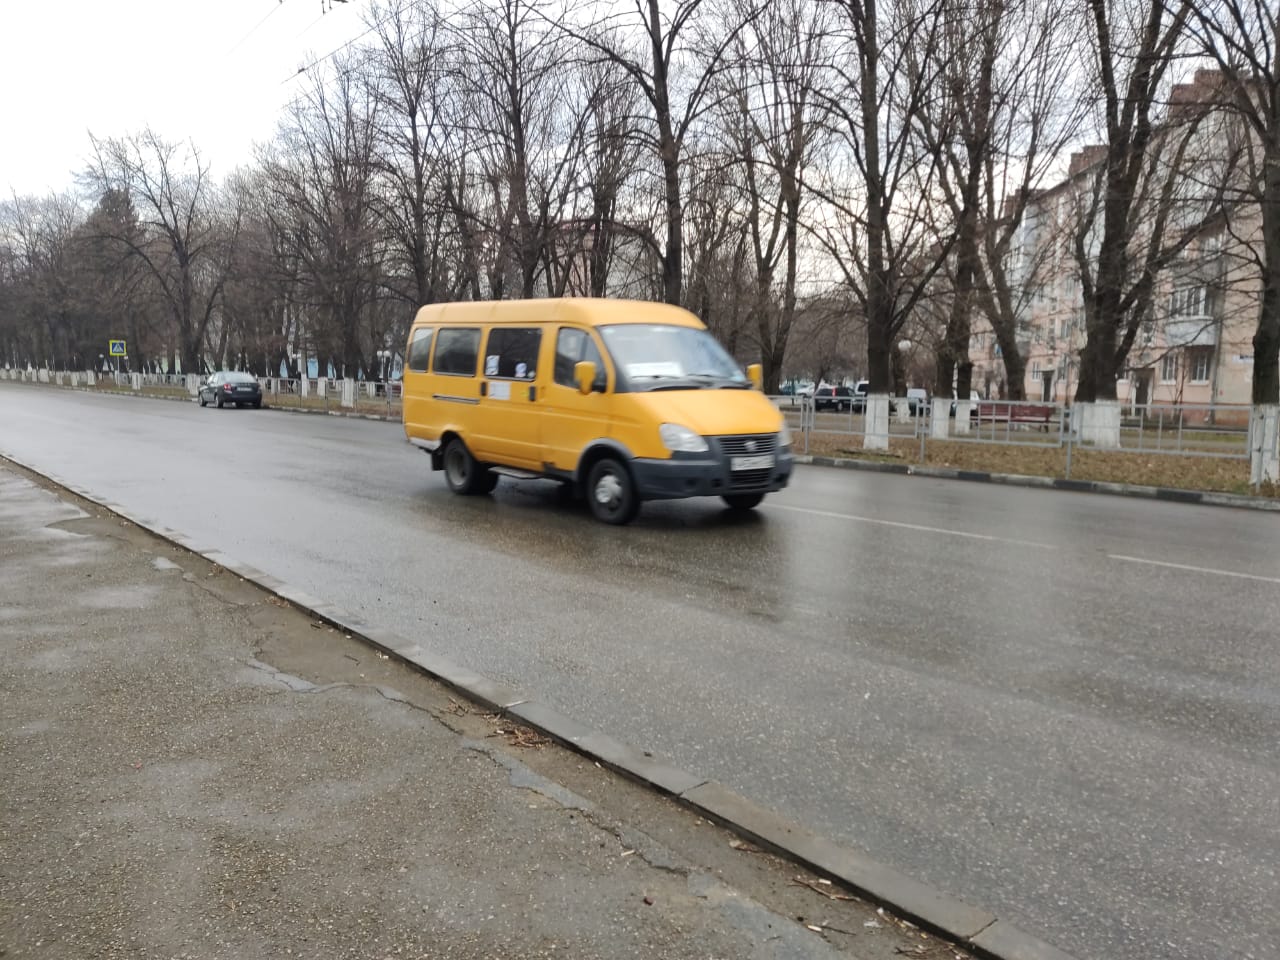 С 27 марта начнет работу новое маршрутное такси «Армавир-Косякинская»